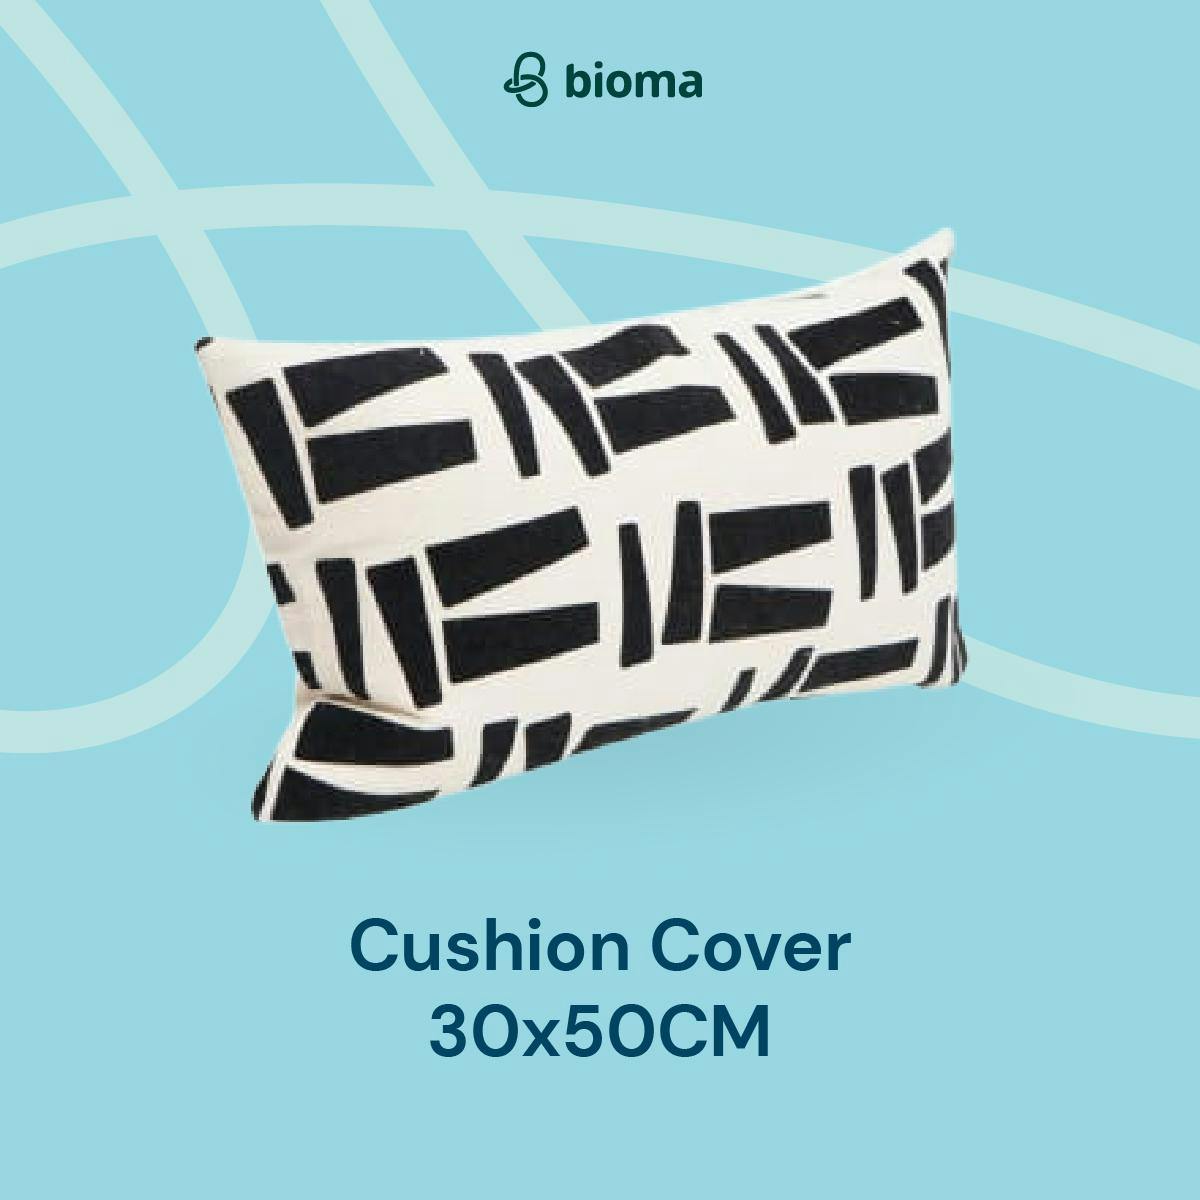 Cushion Cover 30X50CM